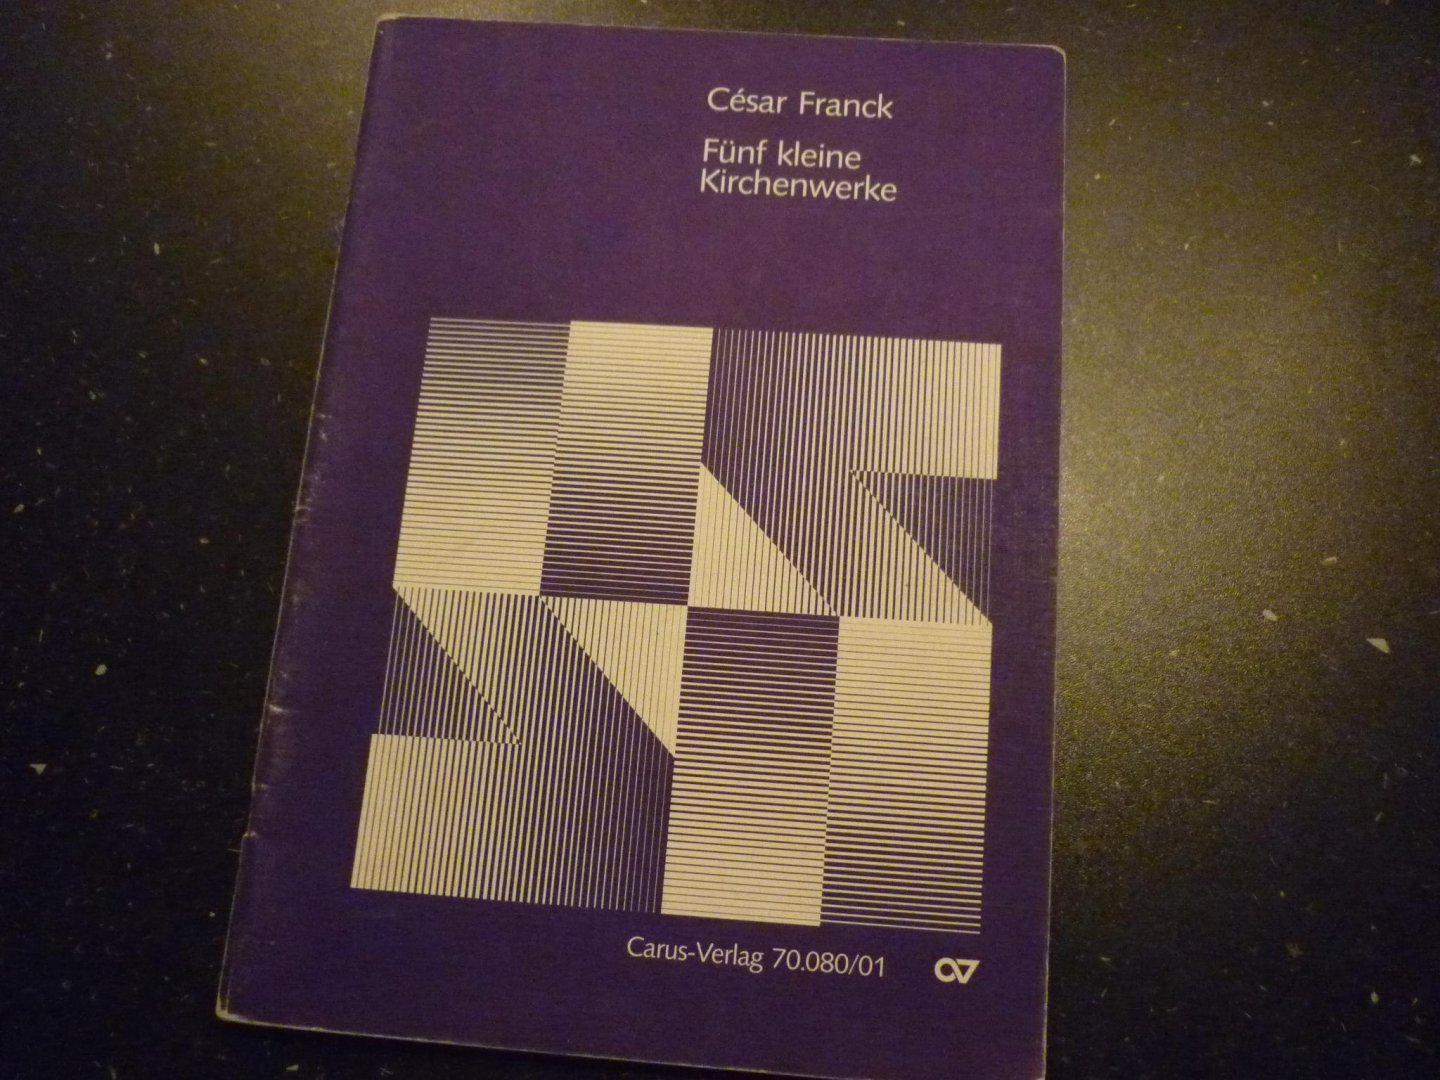 Franck; César - Funf kleine Kirchenwerke / für Singstimme (Soli / Chor) und Orgel (teilweise mit Instrumenten)